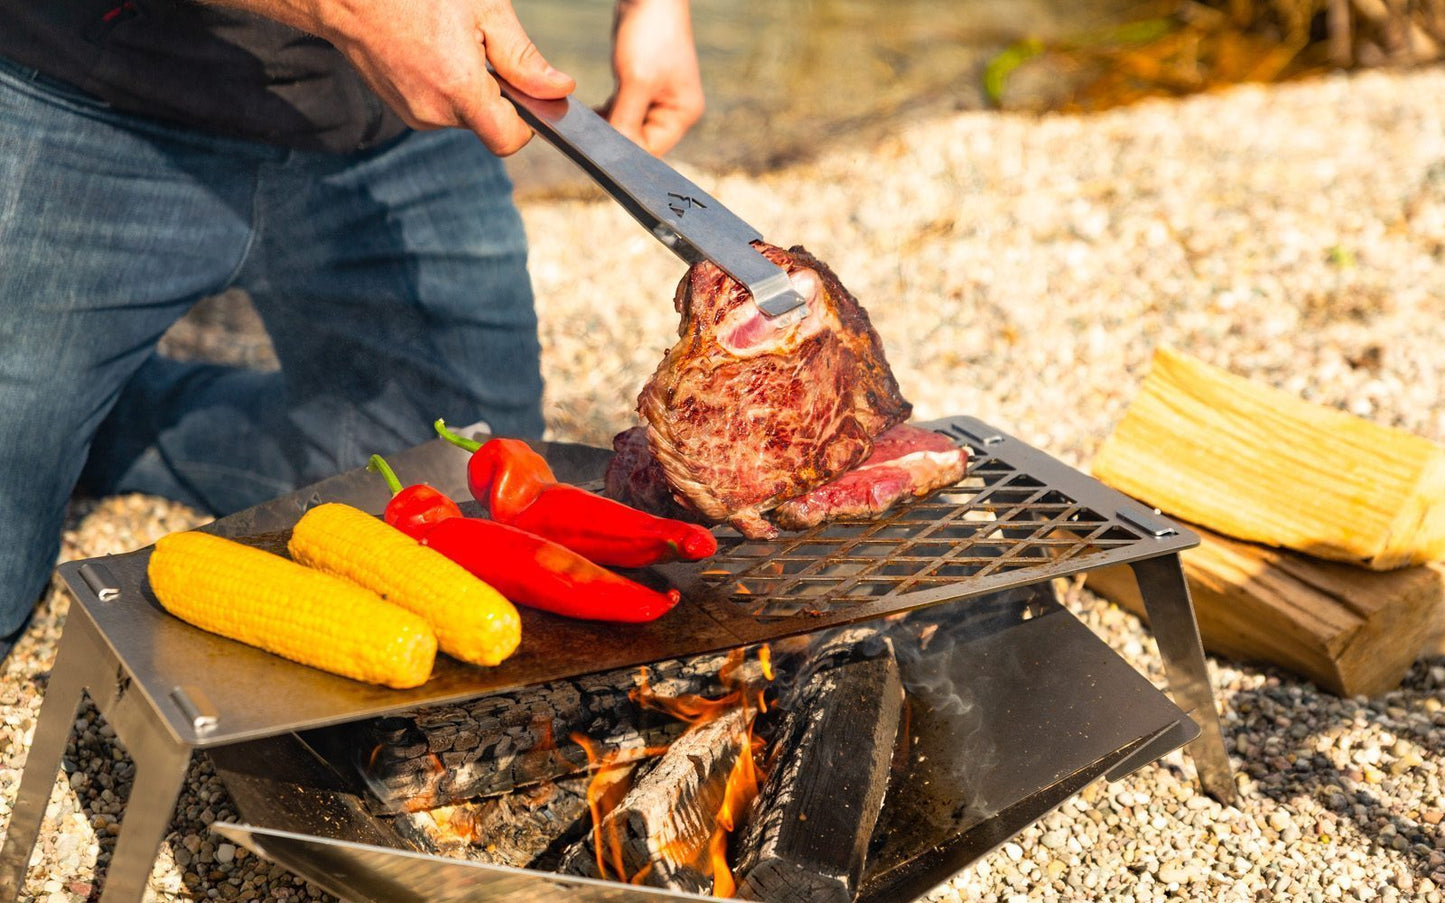 Grillzange wendet ein großes Steak auf der mobilen Grillplatte über der Feuerschale, Maiskolben und Spitzpaprika liegen auch auf dem Grill.